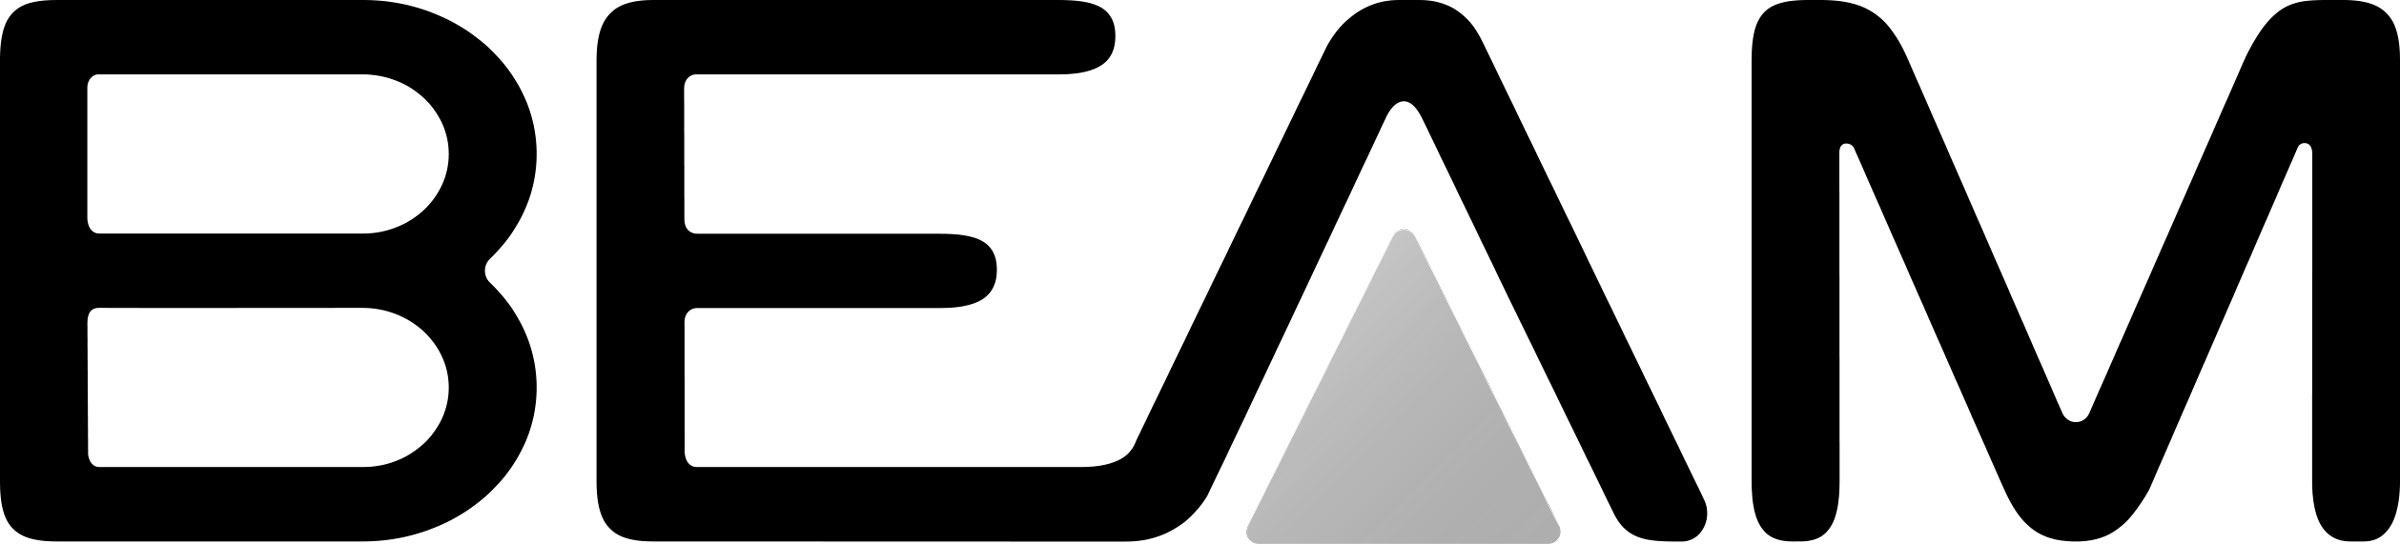 beam central vacuum system logo